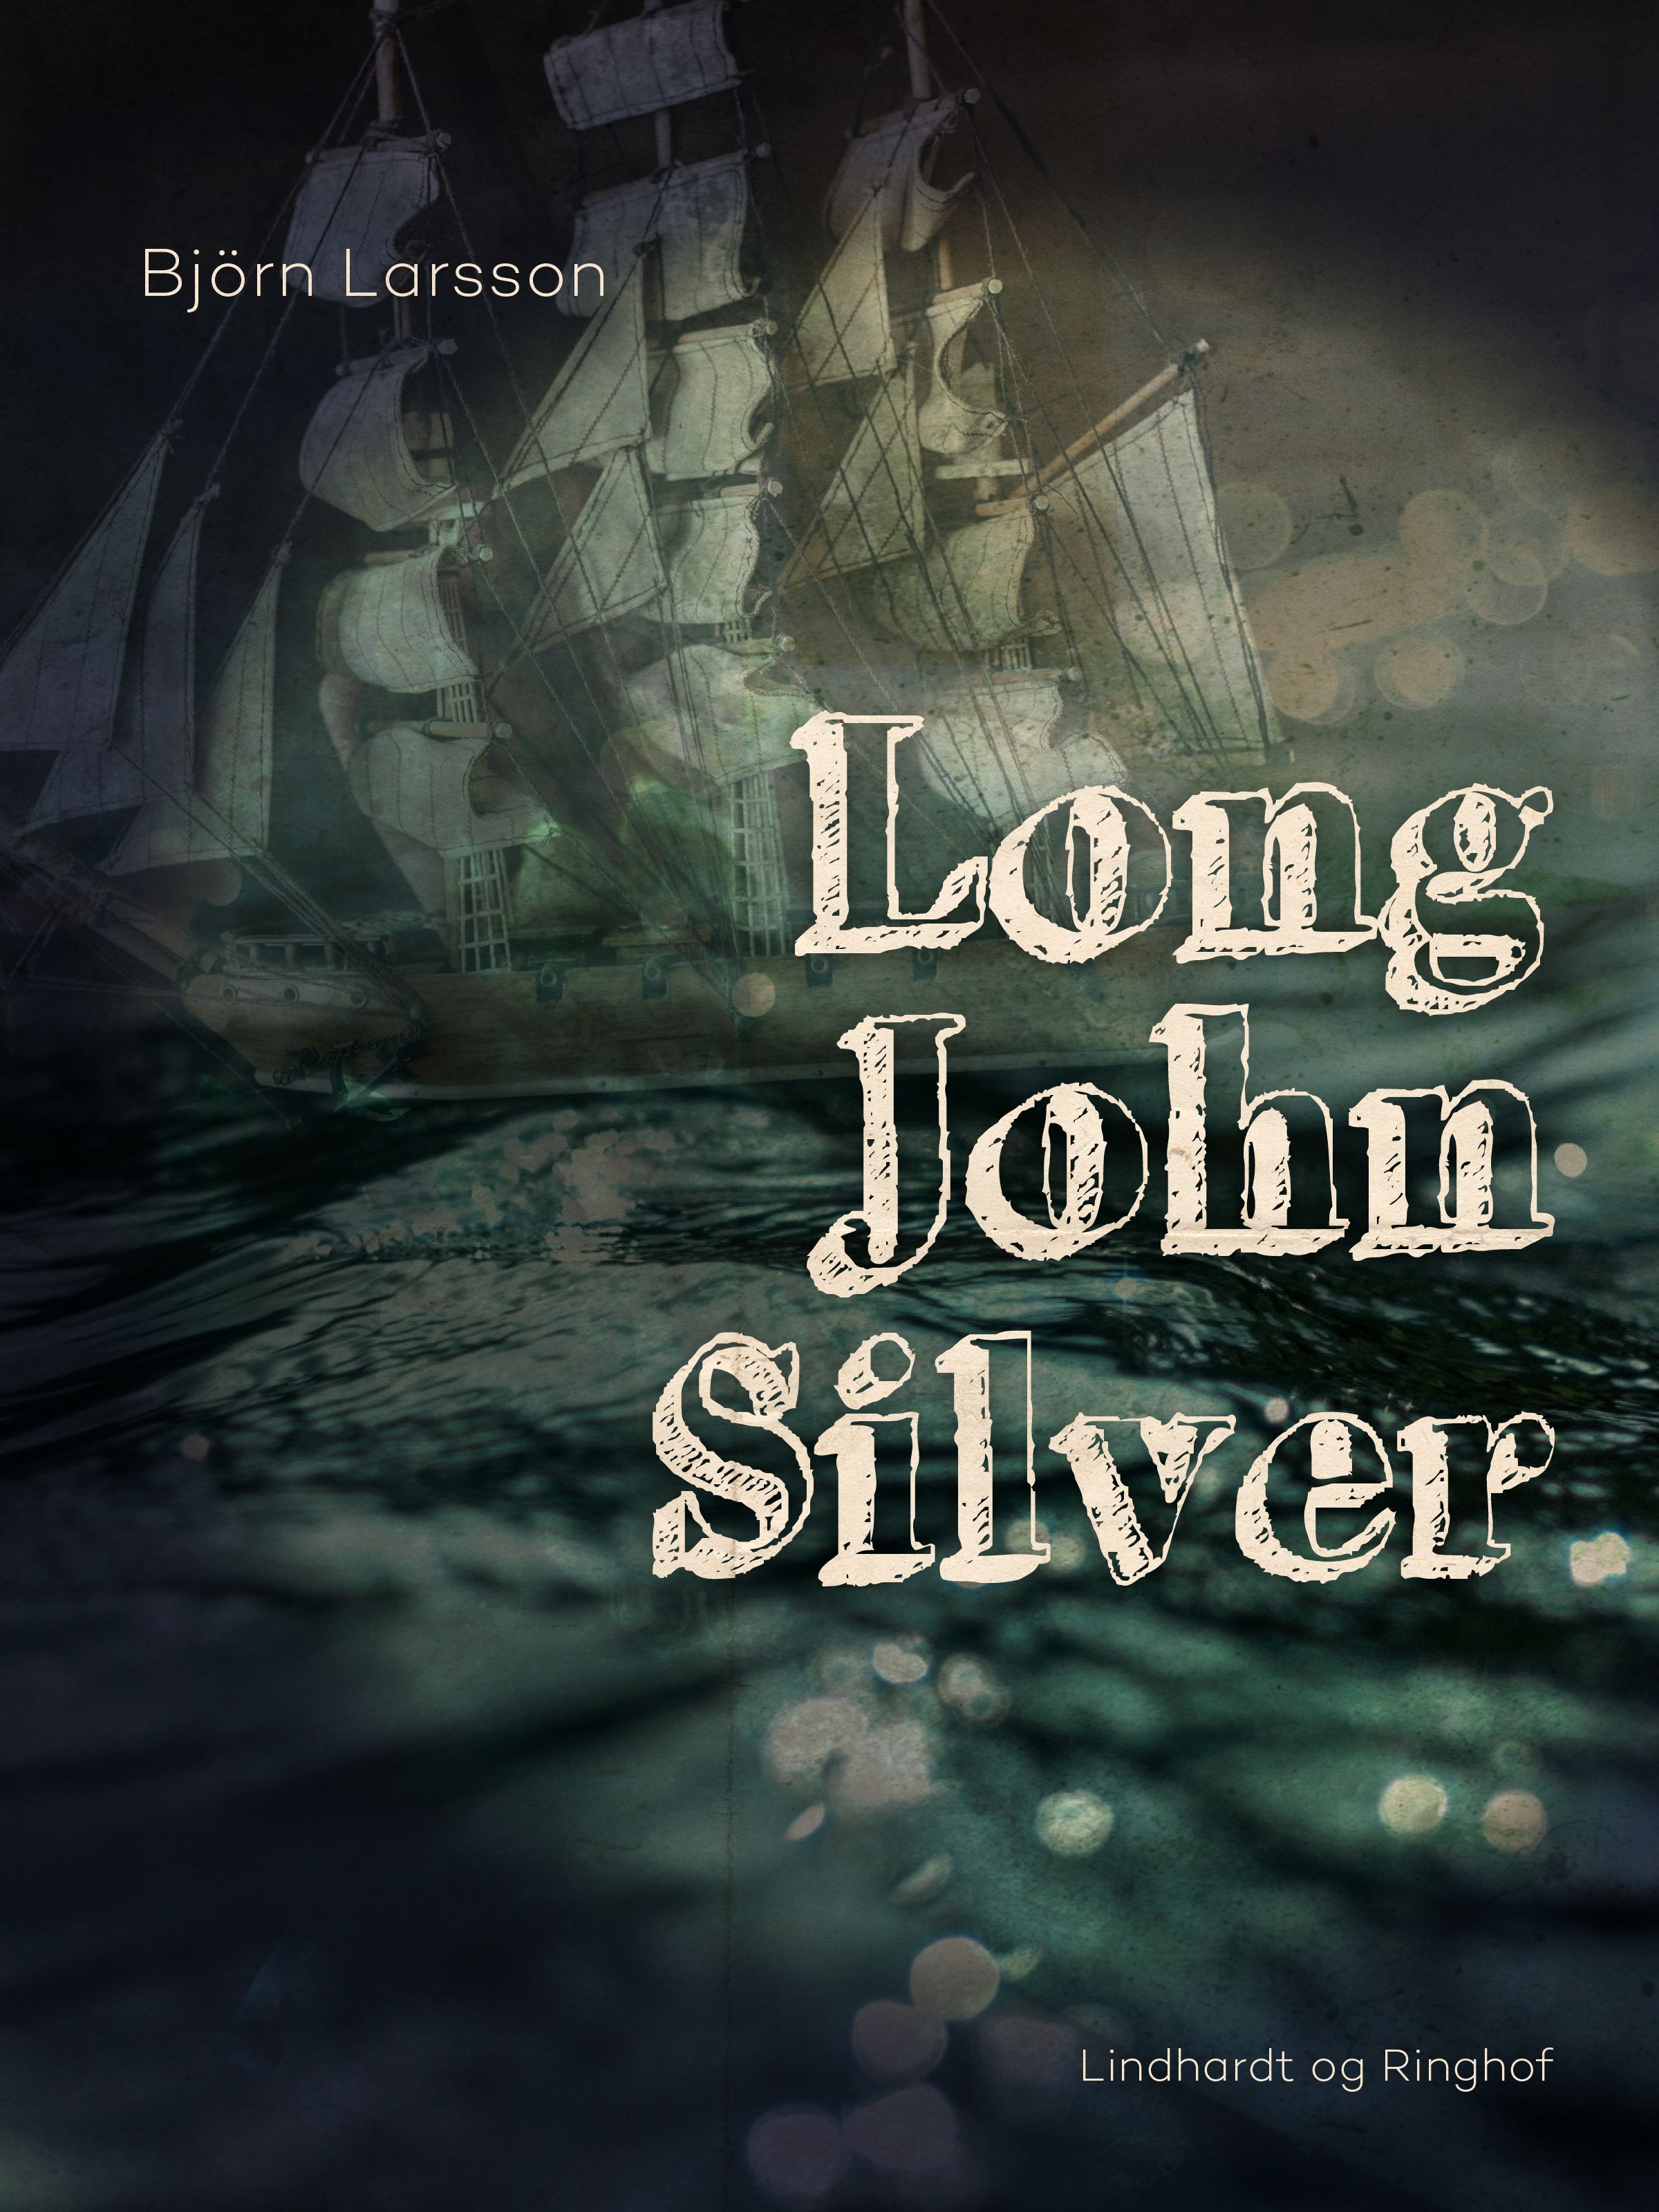 Long John Silver, e-bog af Björn Larsson